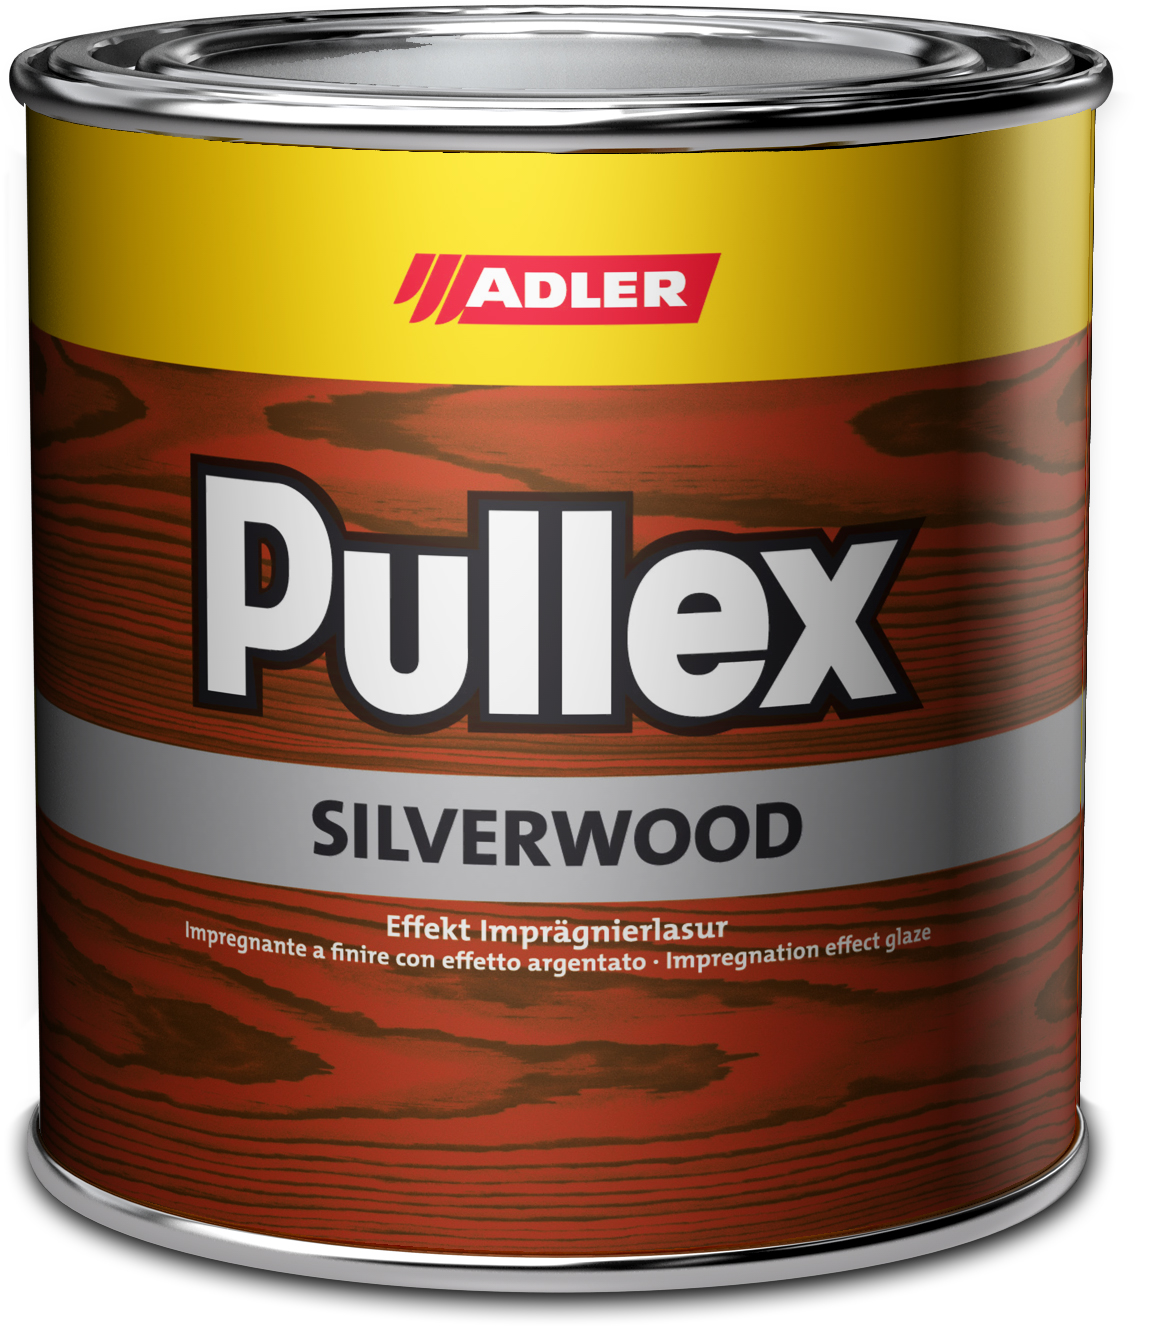 Adler Pullex Silverwood - efektná lazúra do exteriéru vytvárajúca vzhľad starého dreva 20 l silber - strieborná